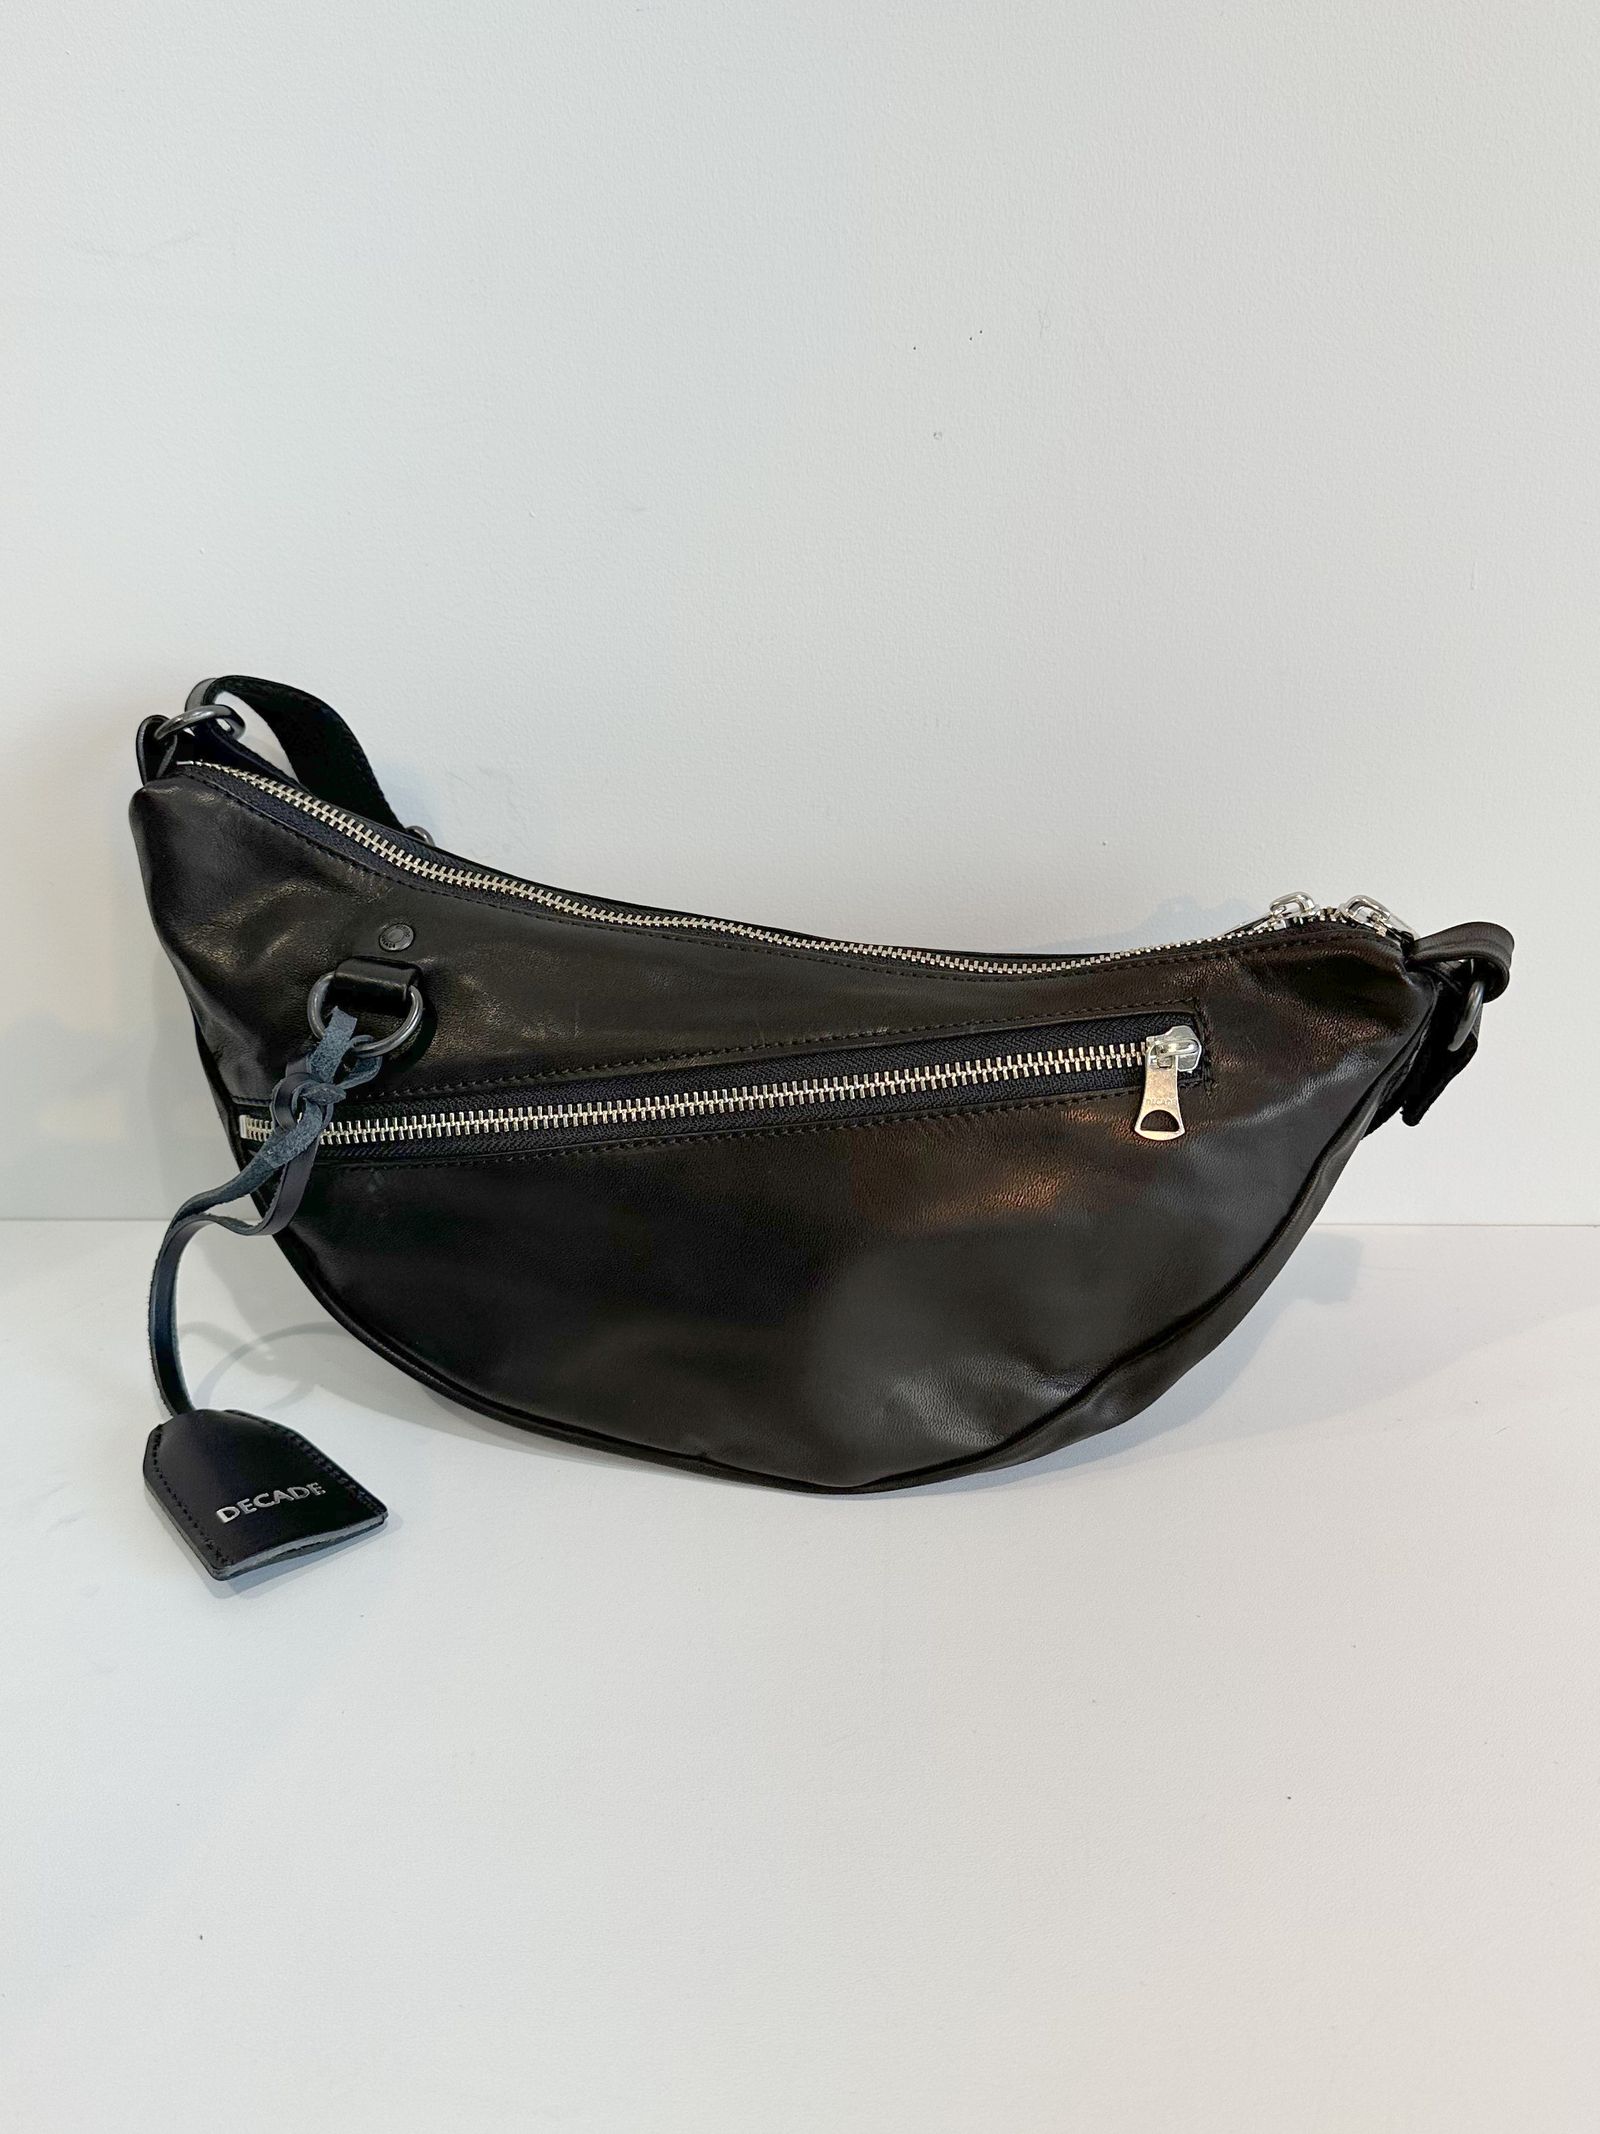 ディケード／DECADE バッグ ショルダーバッグ 鞄 メンズ 男性 男性用レザー 革 本革 ブラック 黒  DCD-00118 ボディバッグ ウォッシュ加工